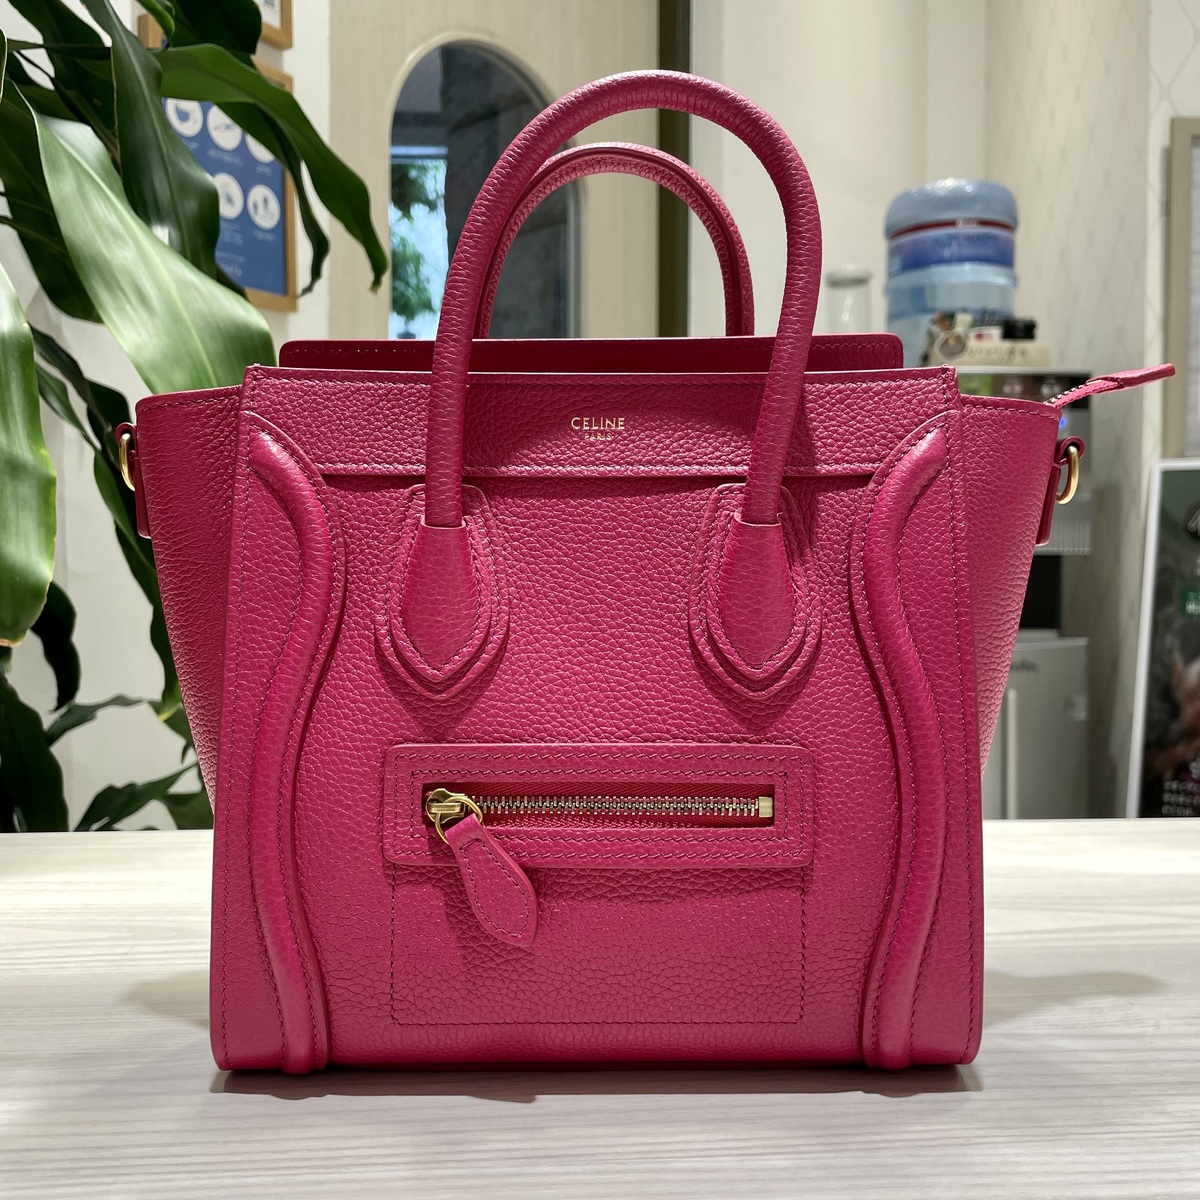 セリーヌのピンク ドラムドカーフスキン ラゲージナノ 2WAYバッグの買取実績です。